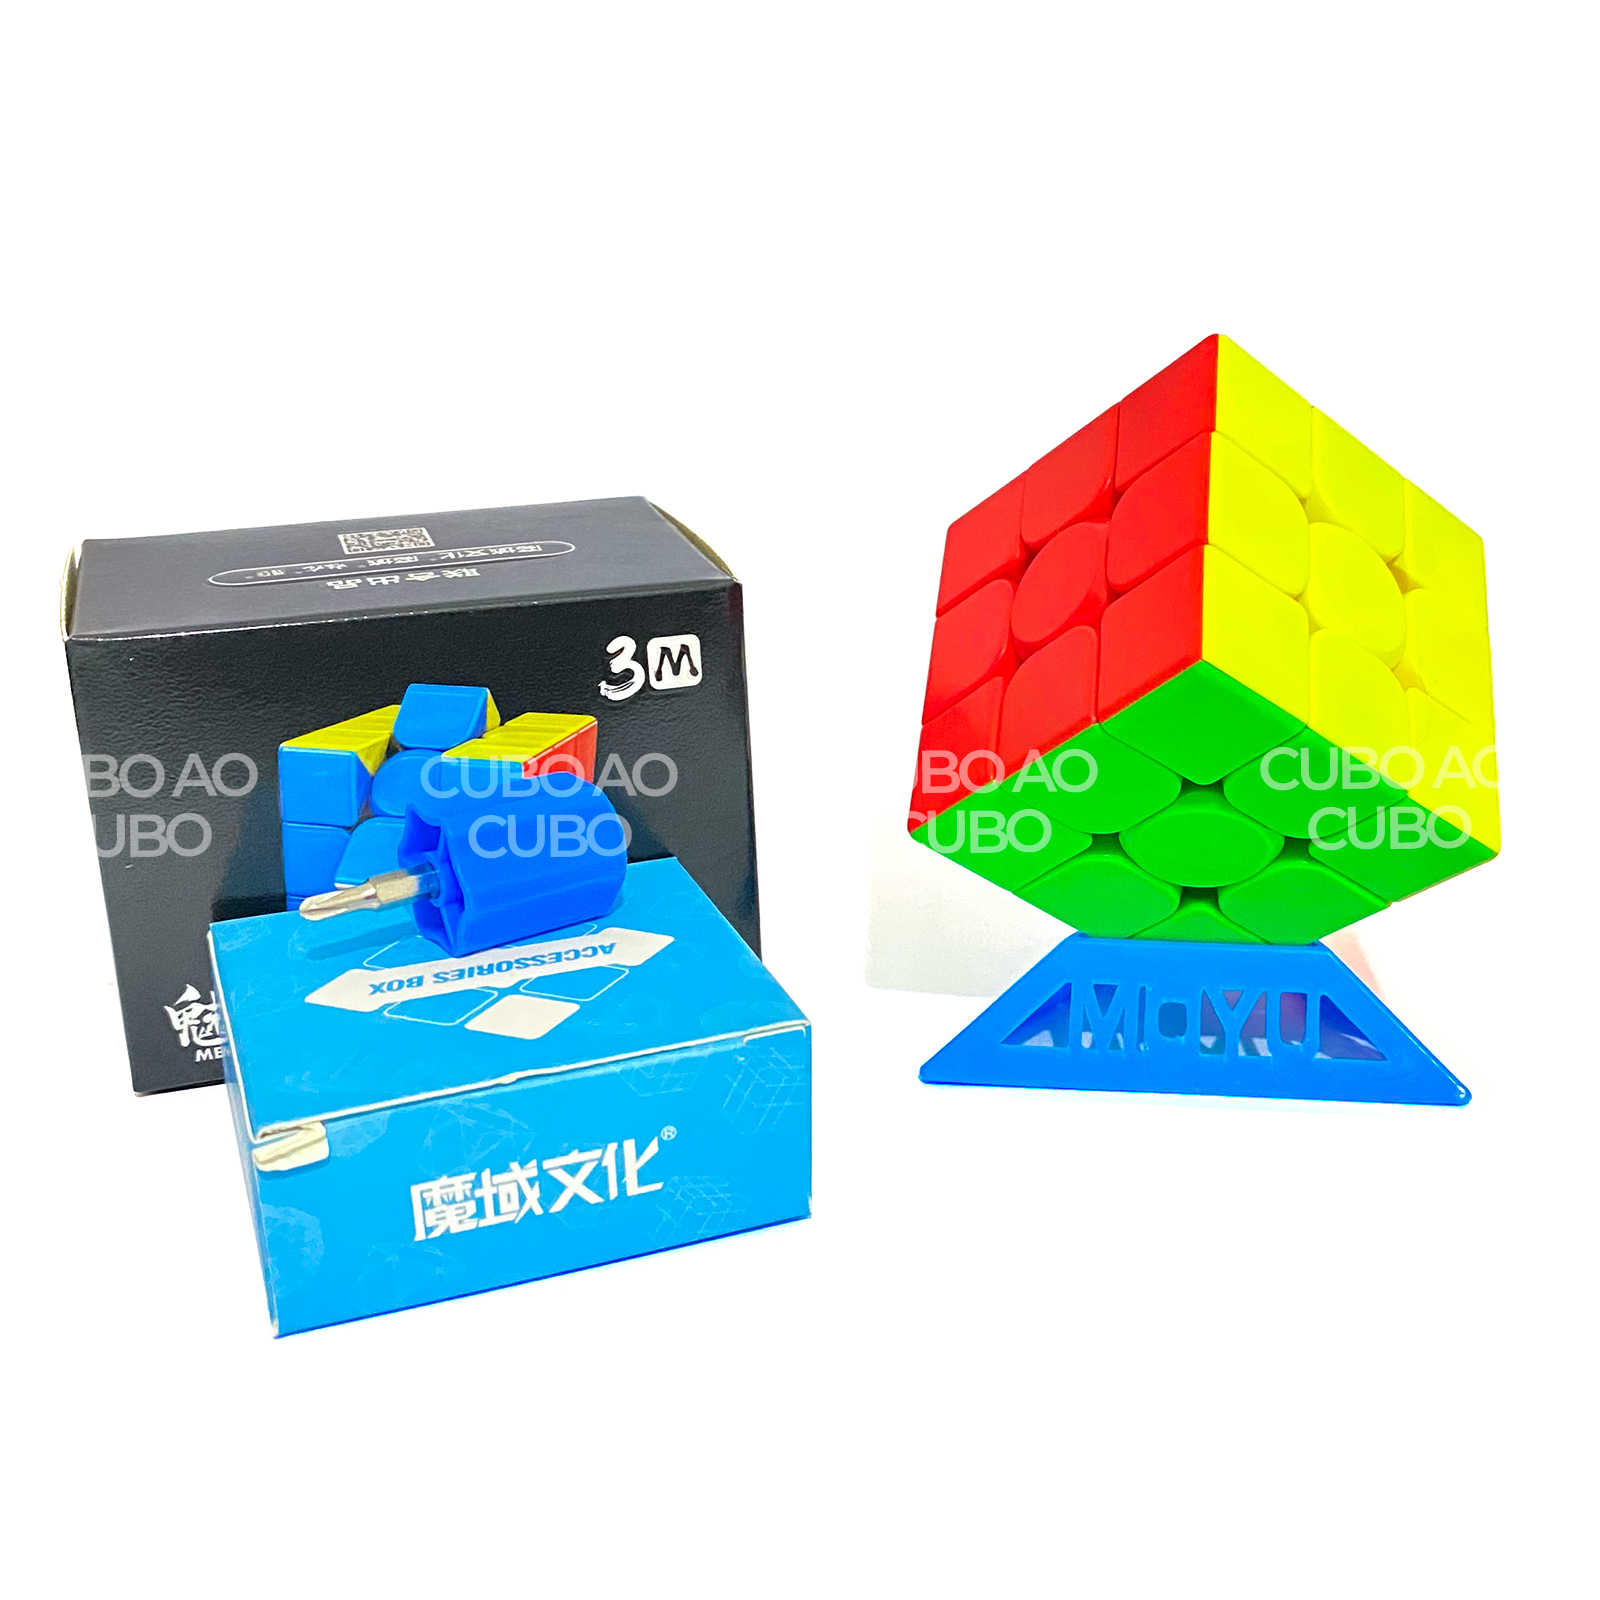 Cubo Mágico Profissional 3x3x3 Moyu Meilong Stickerless - Sofia